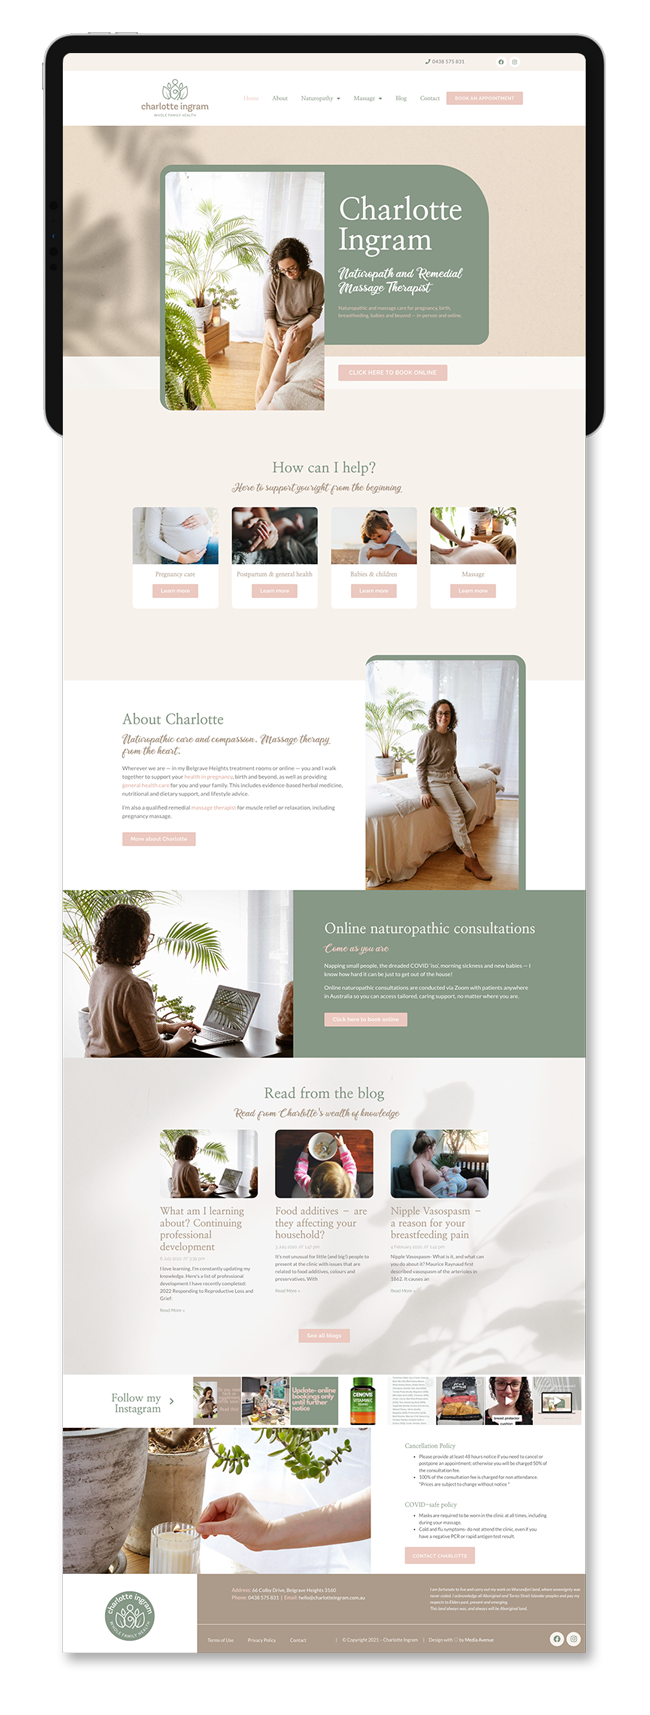 Media Avenue client website design for Charlotte Ingram